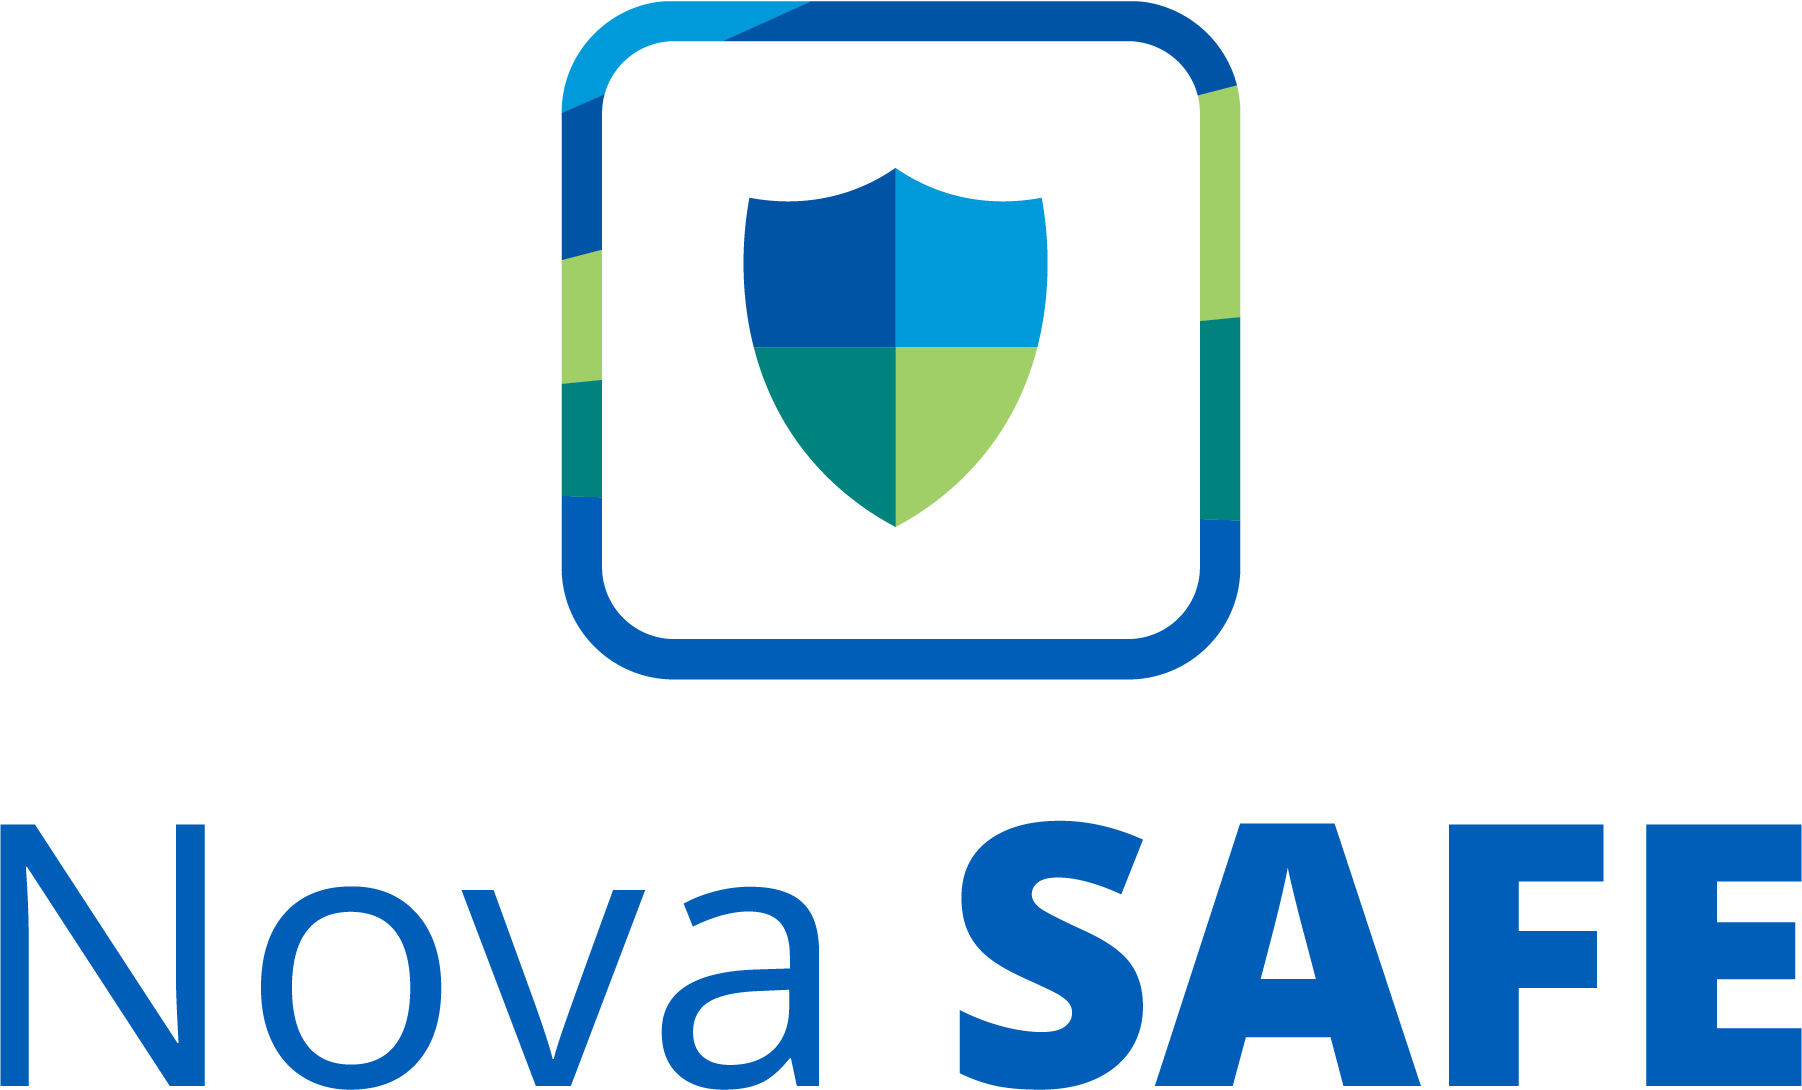 Nova Safe app logo